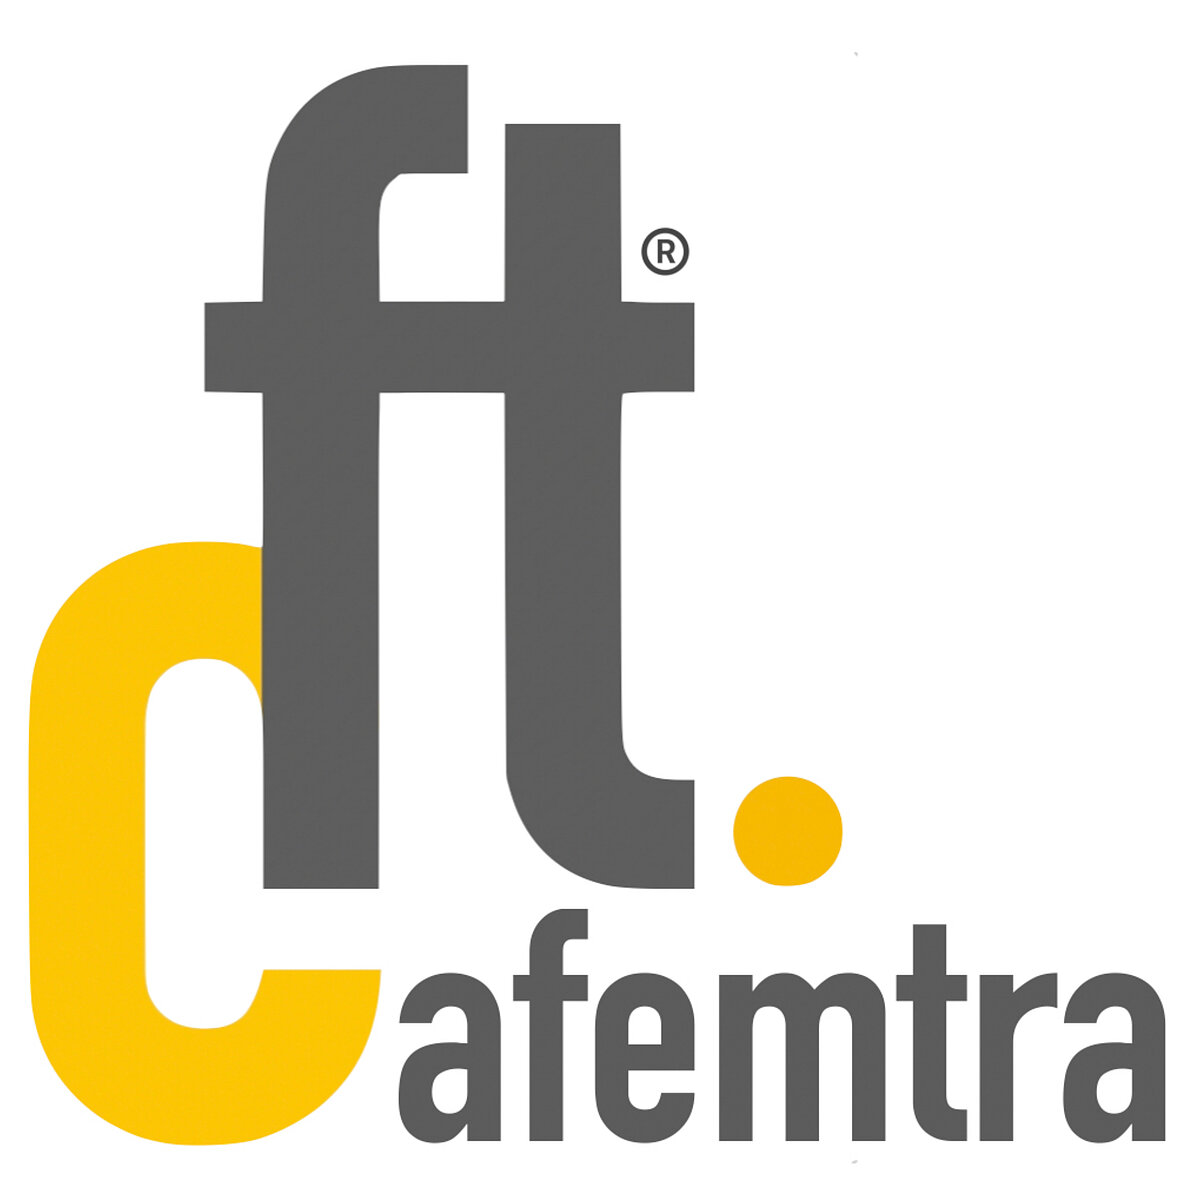 Cafemtra Logo